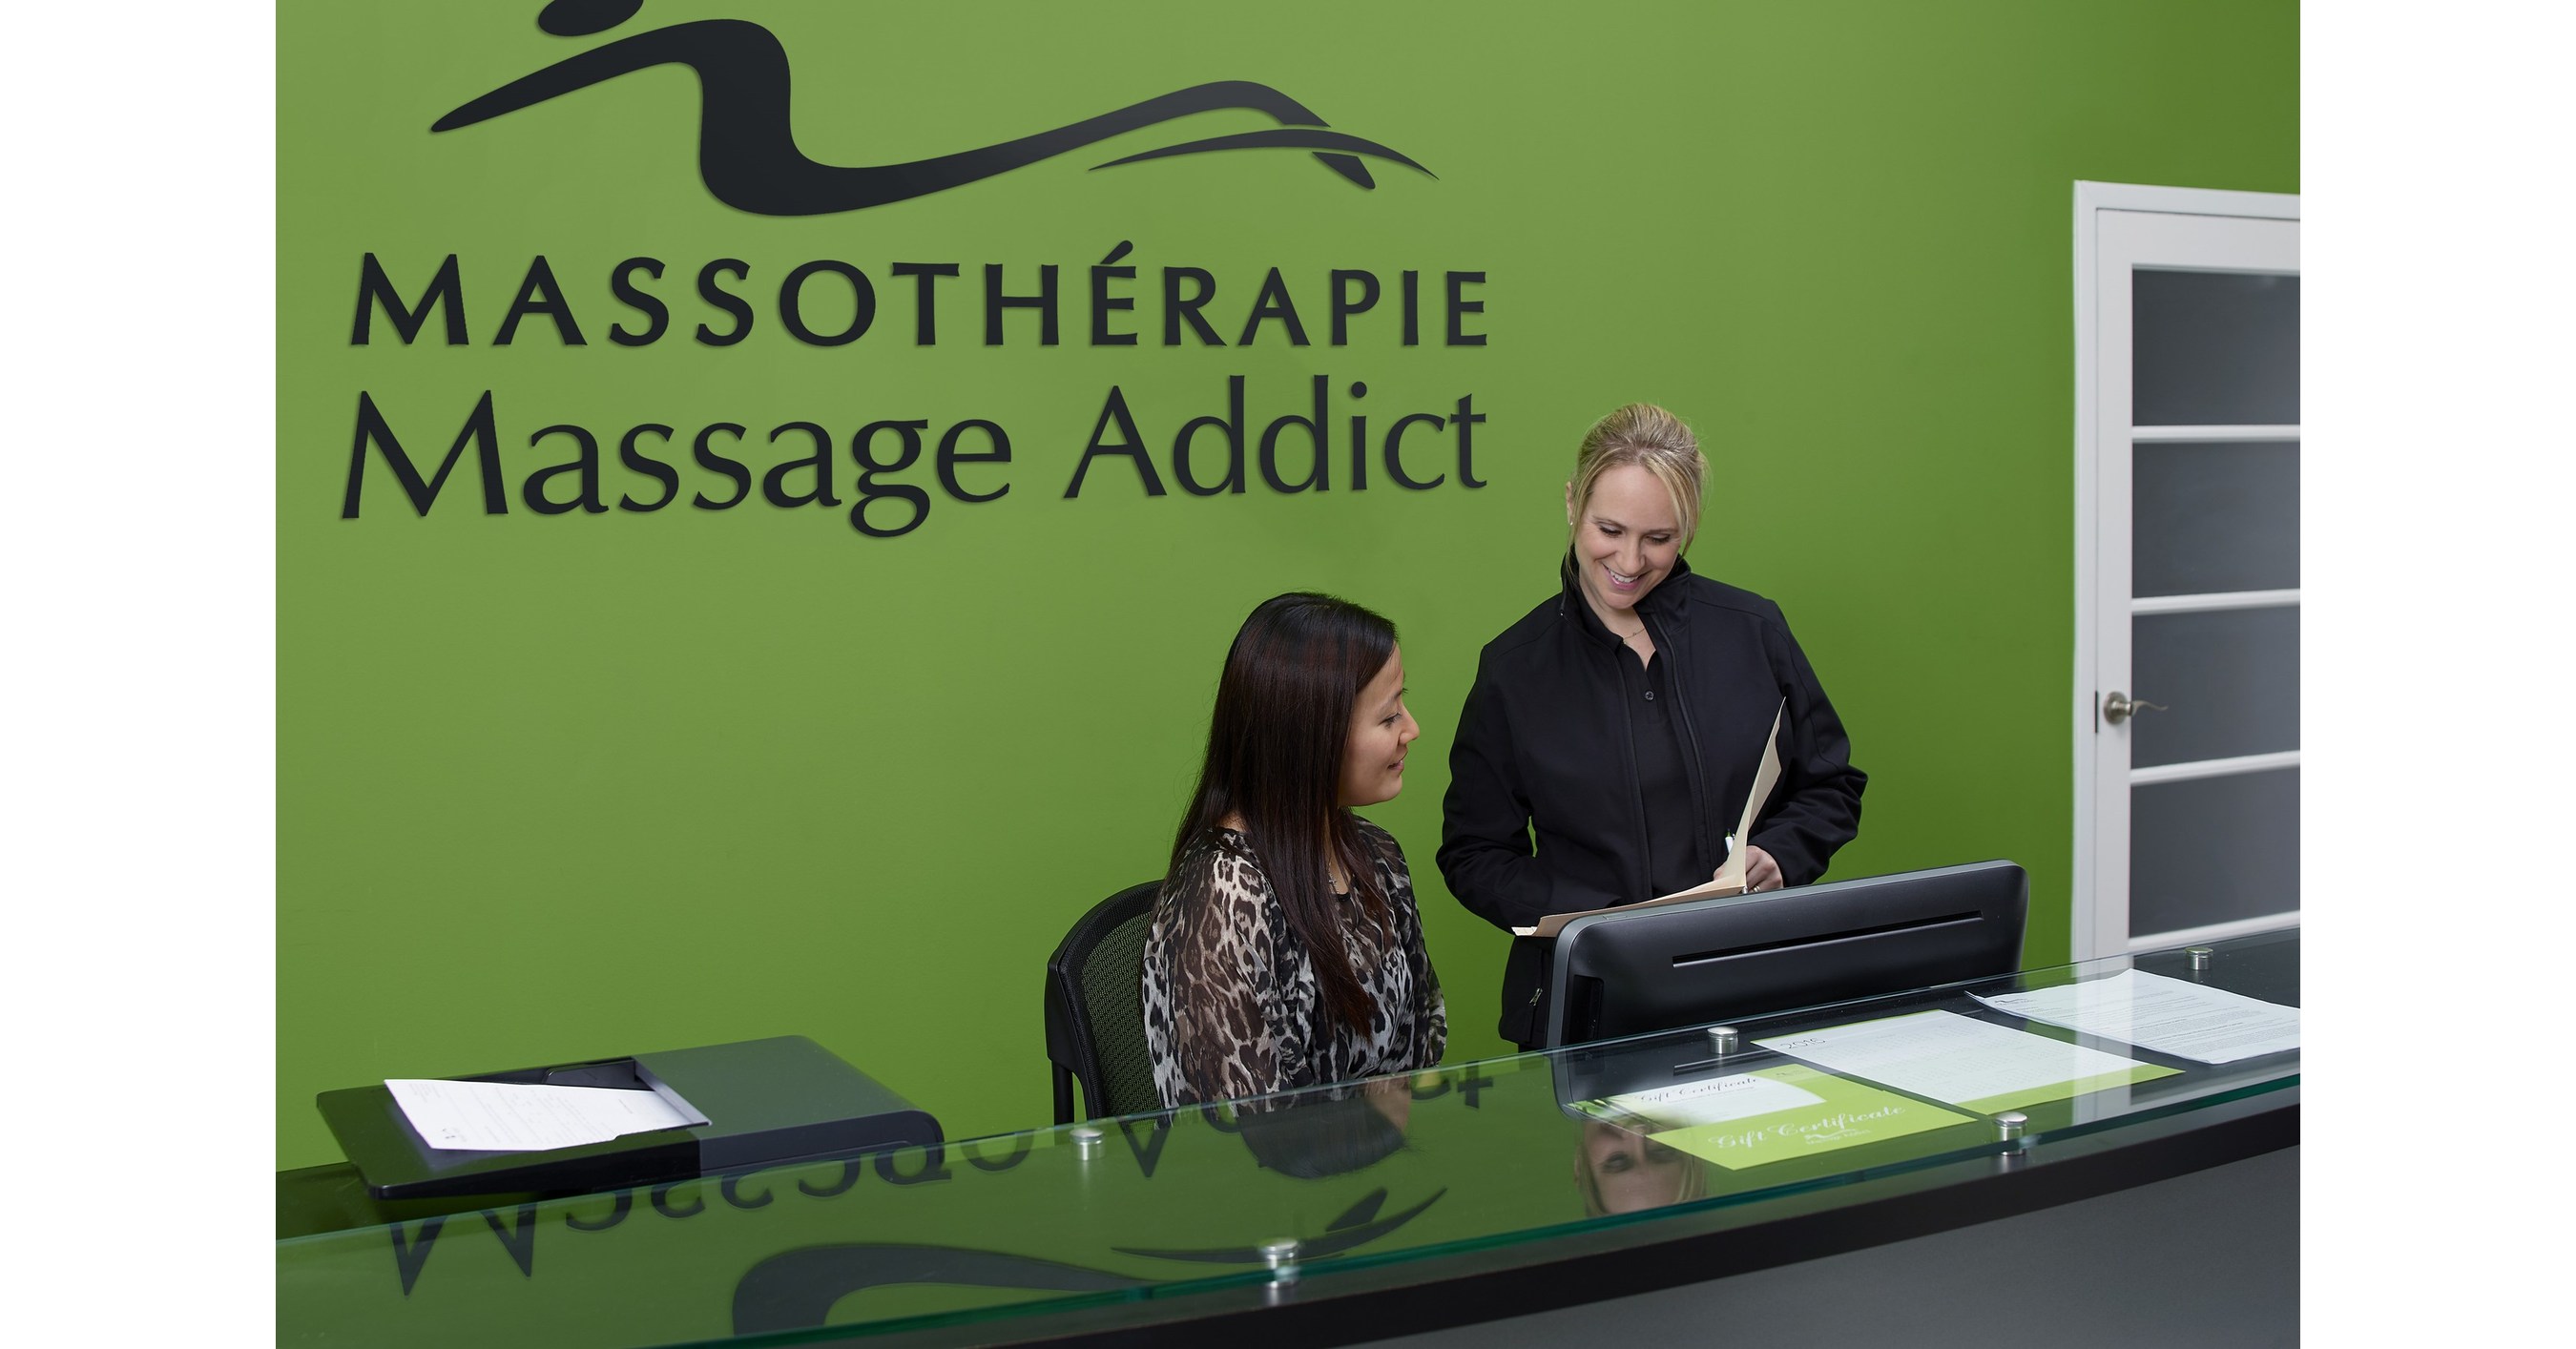 Massage à Montréal La Première Clinique De Massothérapie Massage Addict Au Québec Est La 80e